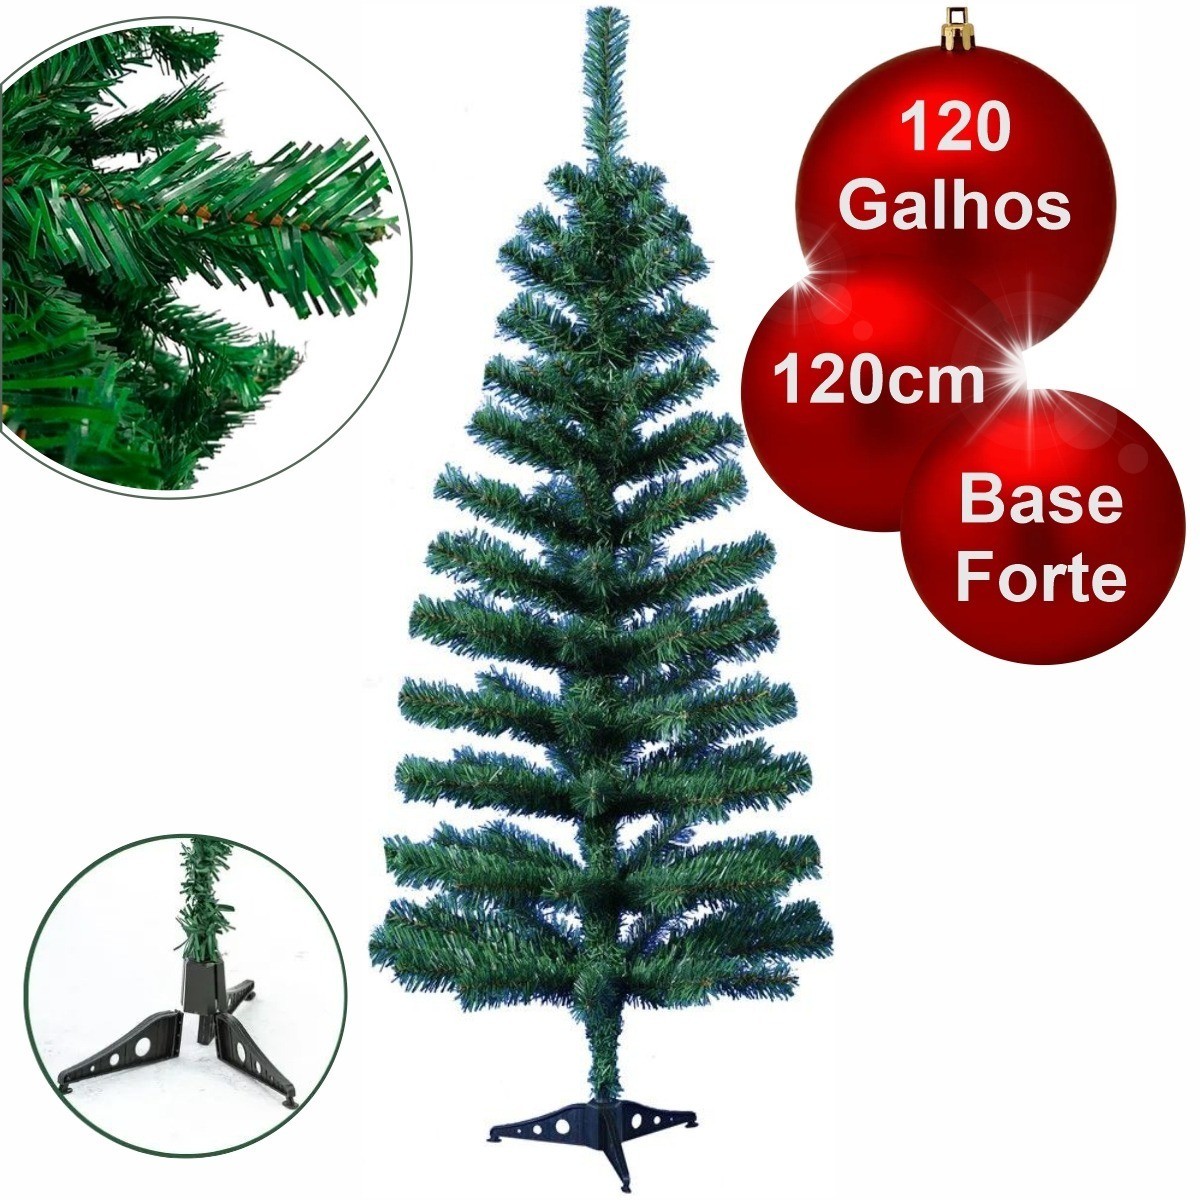 Árvore de Natal decorada 1.20m com enfeites